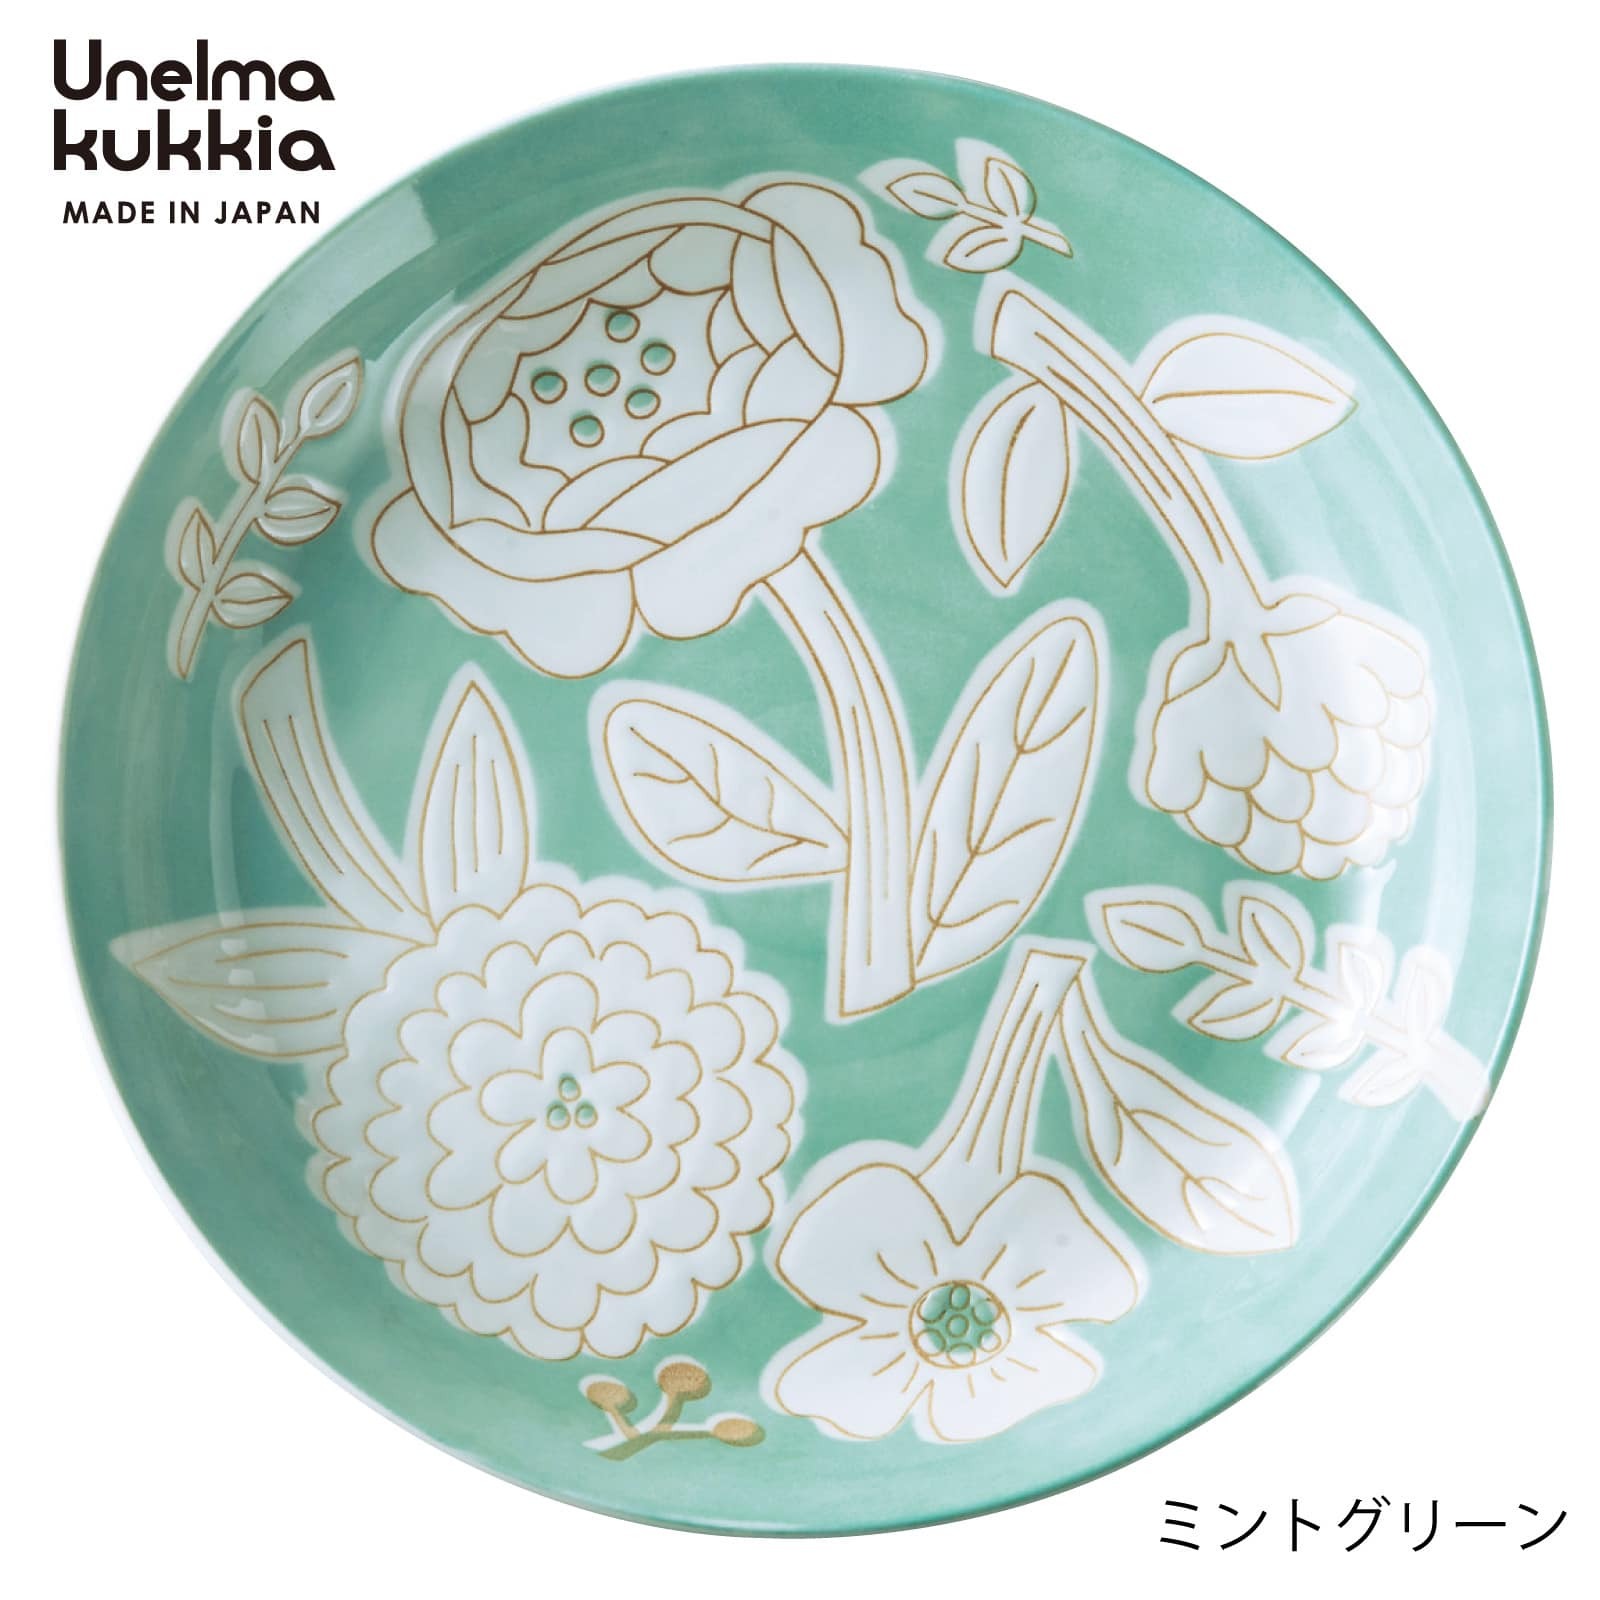 日本盤餐具【Unelma-kukkia】花朵圖案-輕量大盤子日本製餐具 (2)